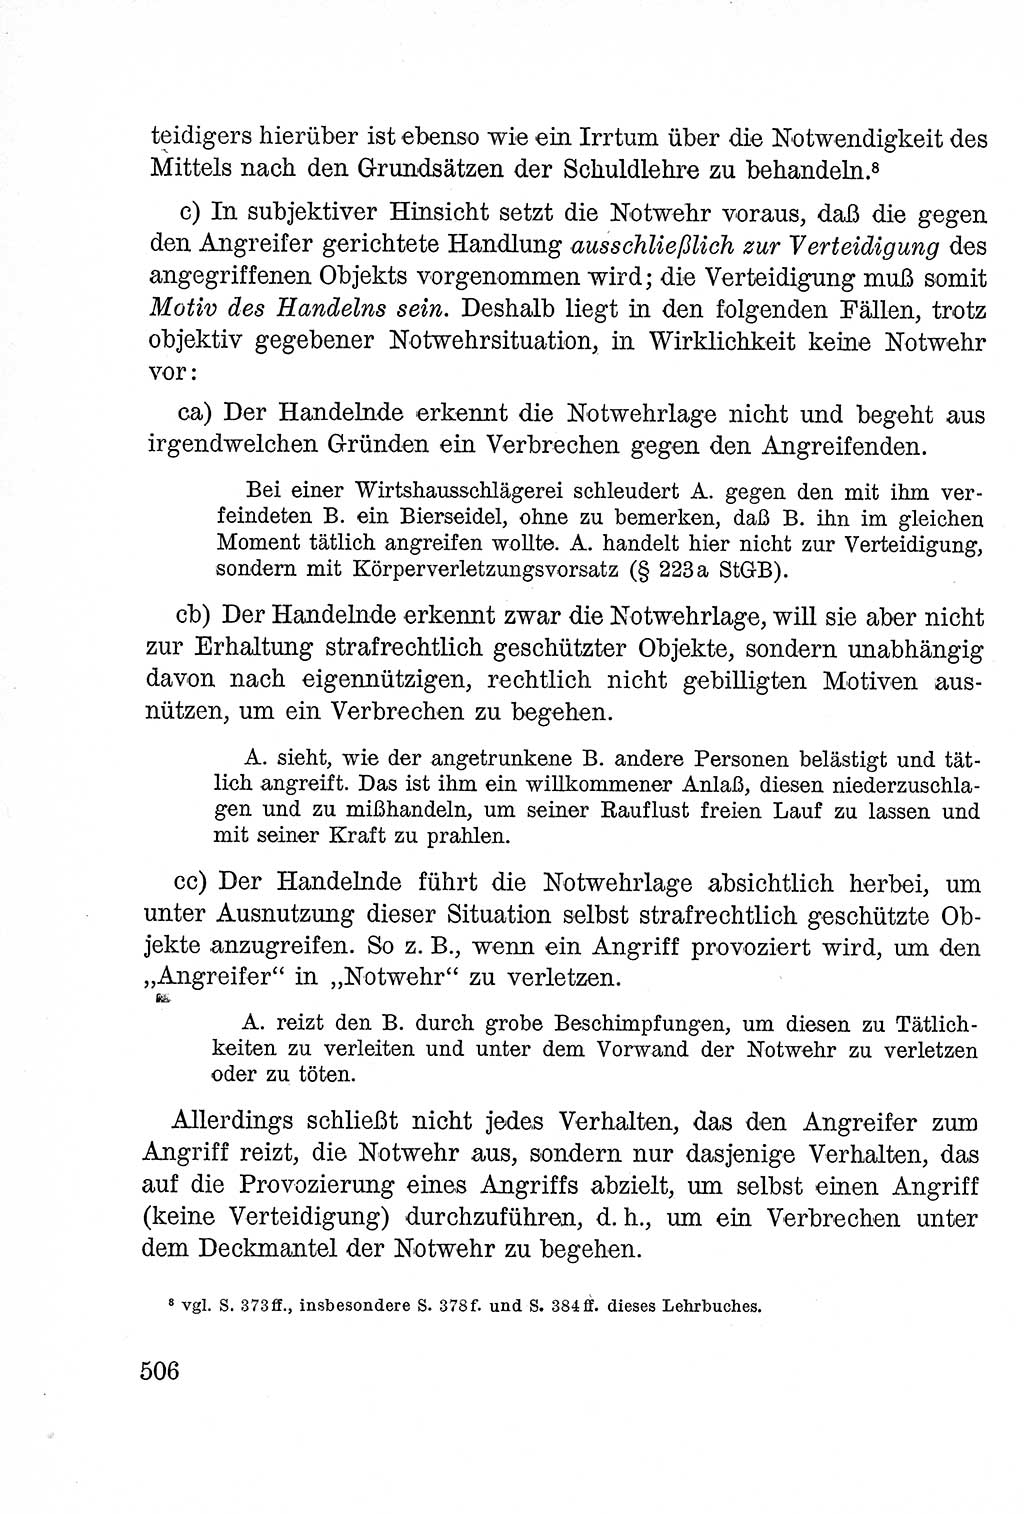 Lehrbuch des Strafrechts der Deutschen Demokratischen Republik (DDR), Allgemeiner Teil 1957, Seite 506 (Lb. Strafr. DDR AT 1957, S. 506)